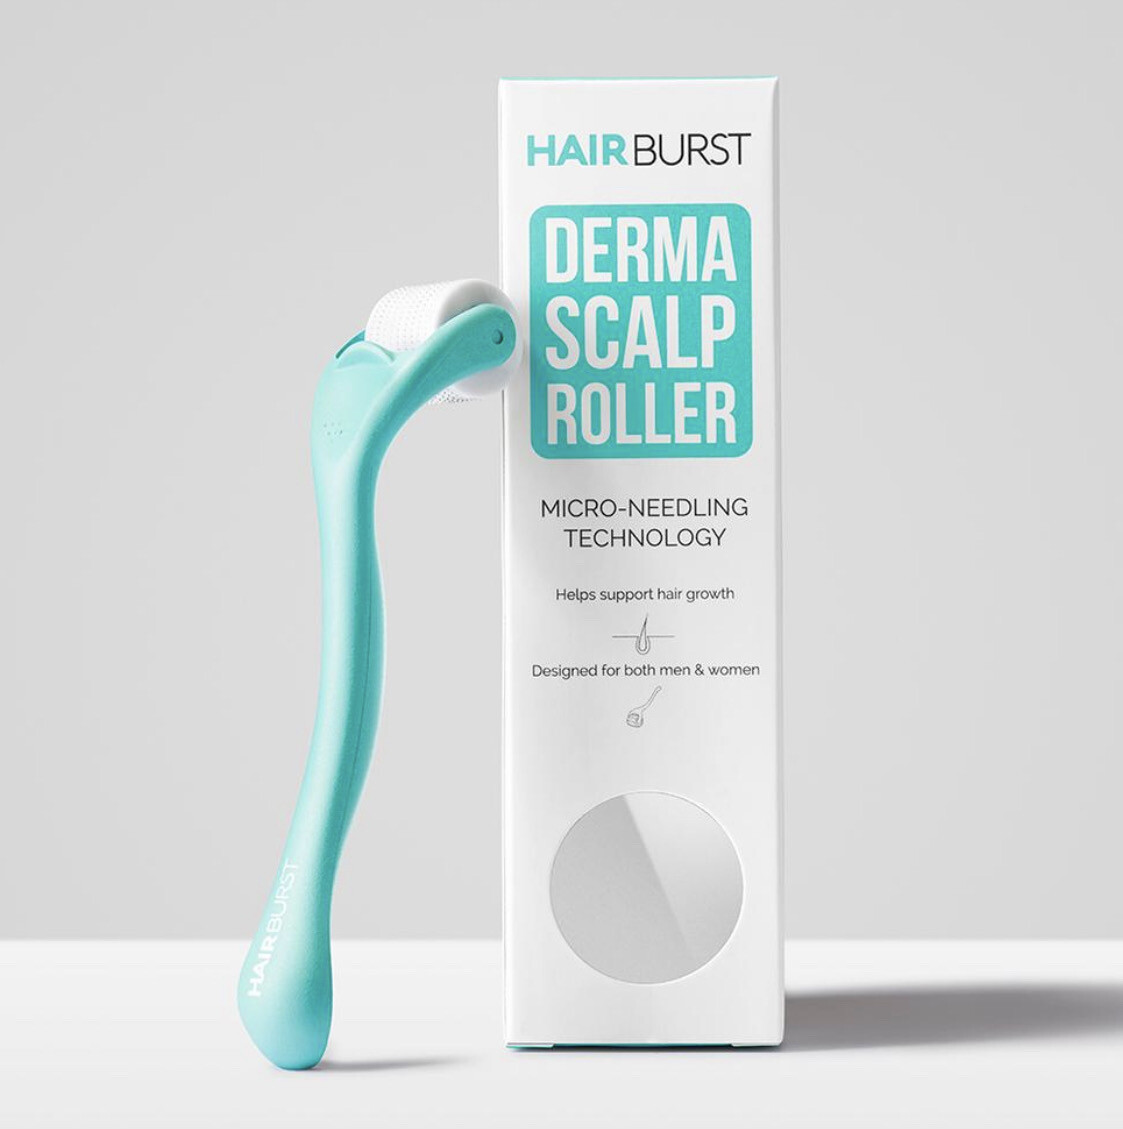 Hairburst - Derma Scalp Roller